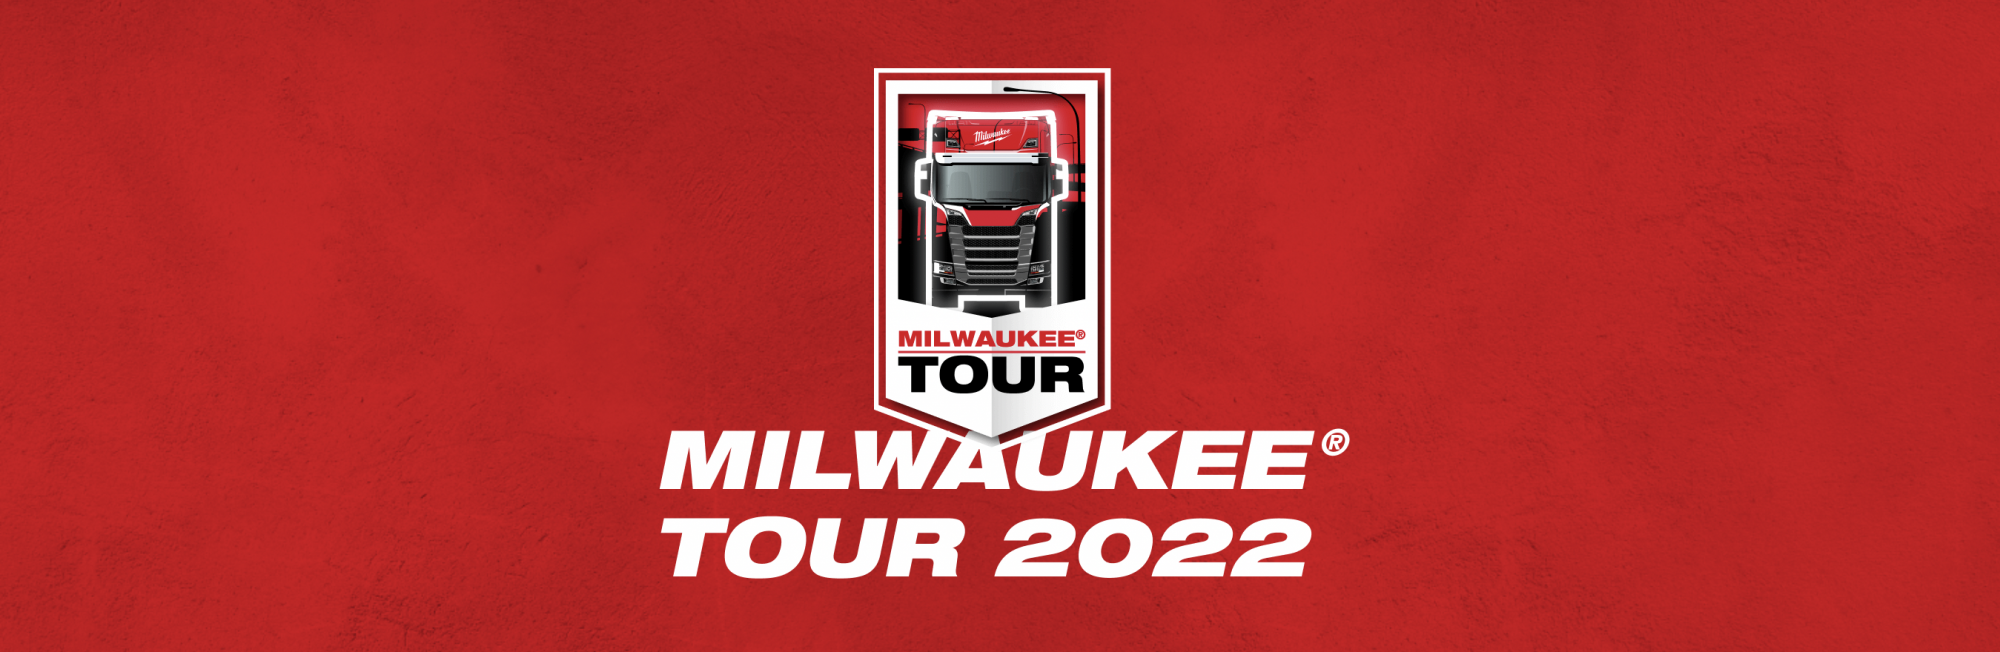 Milwaukee tour 2022